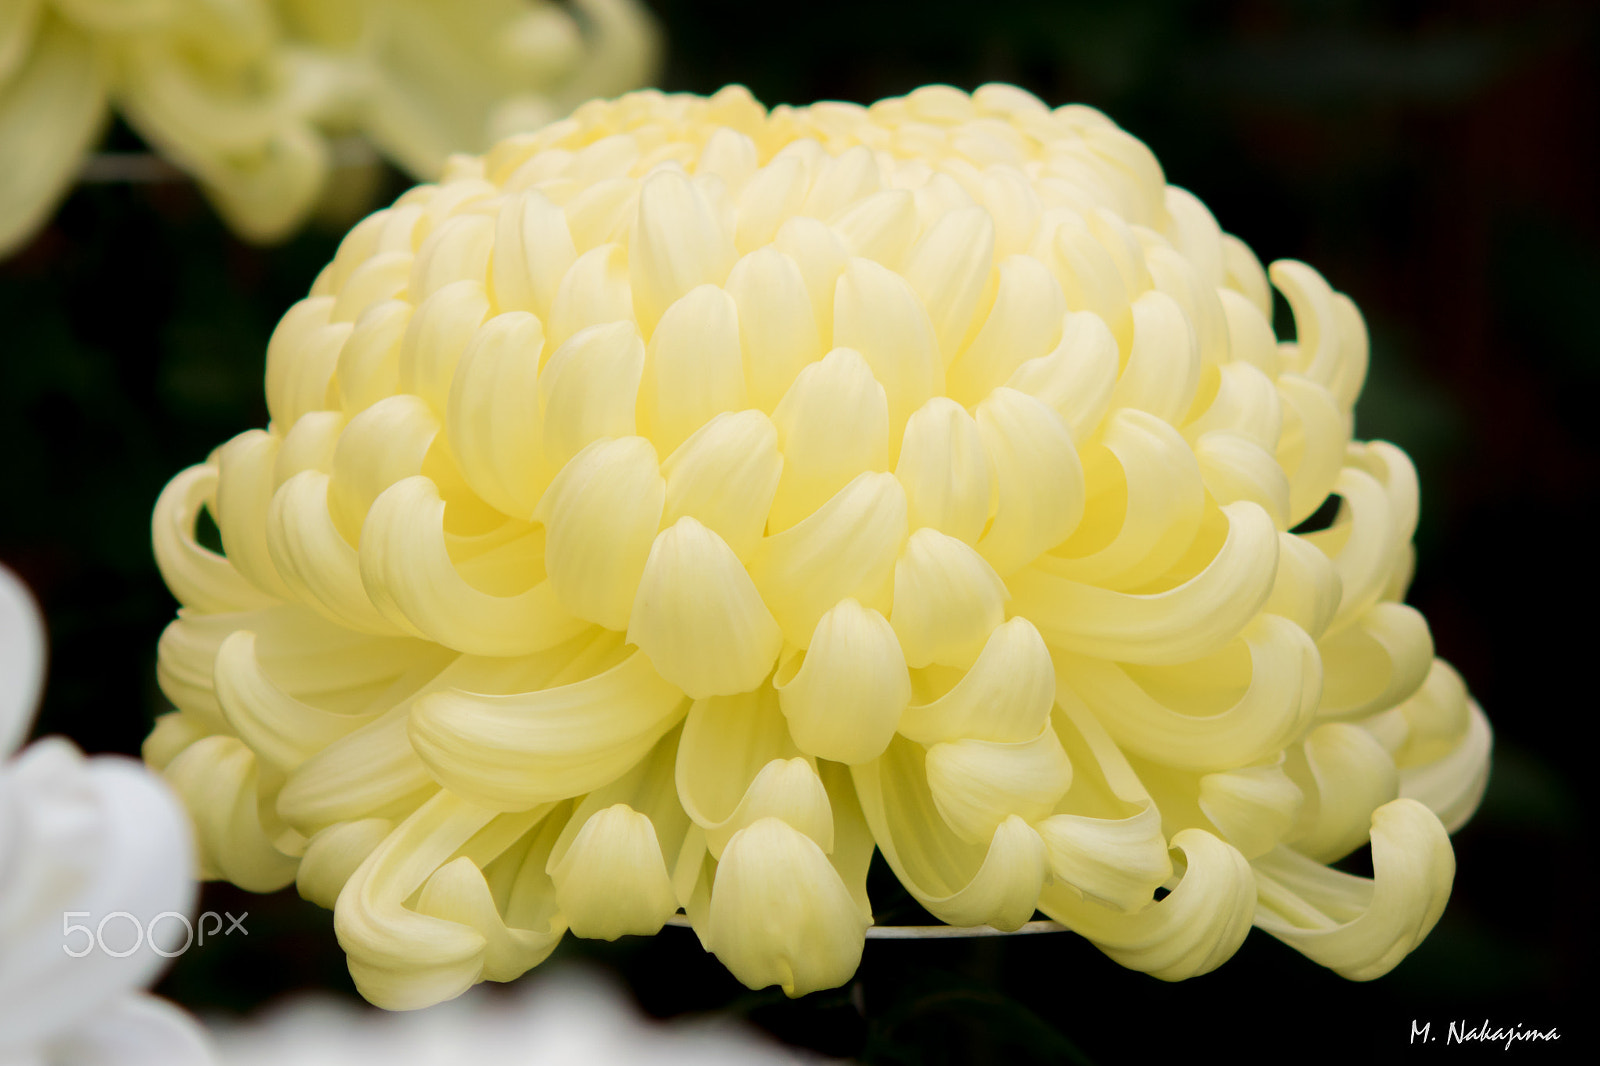 Nikon 1 V3 + 60mm f/2.8G sample photo. Chrysanthemum -3 photography